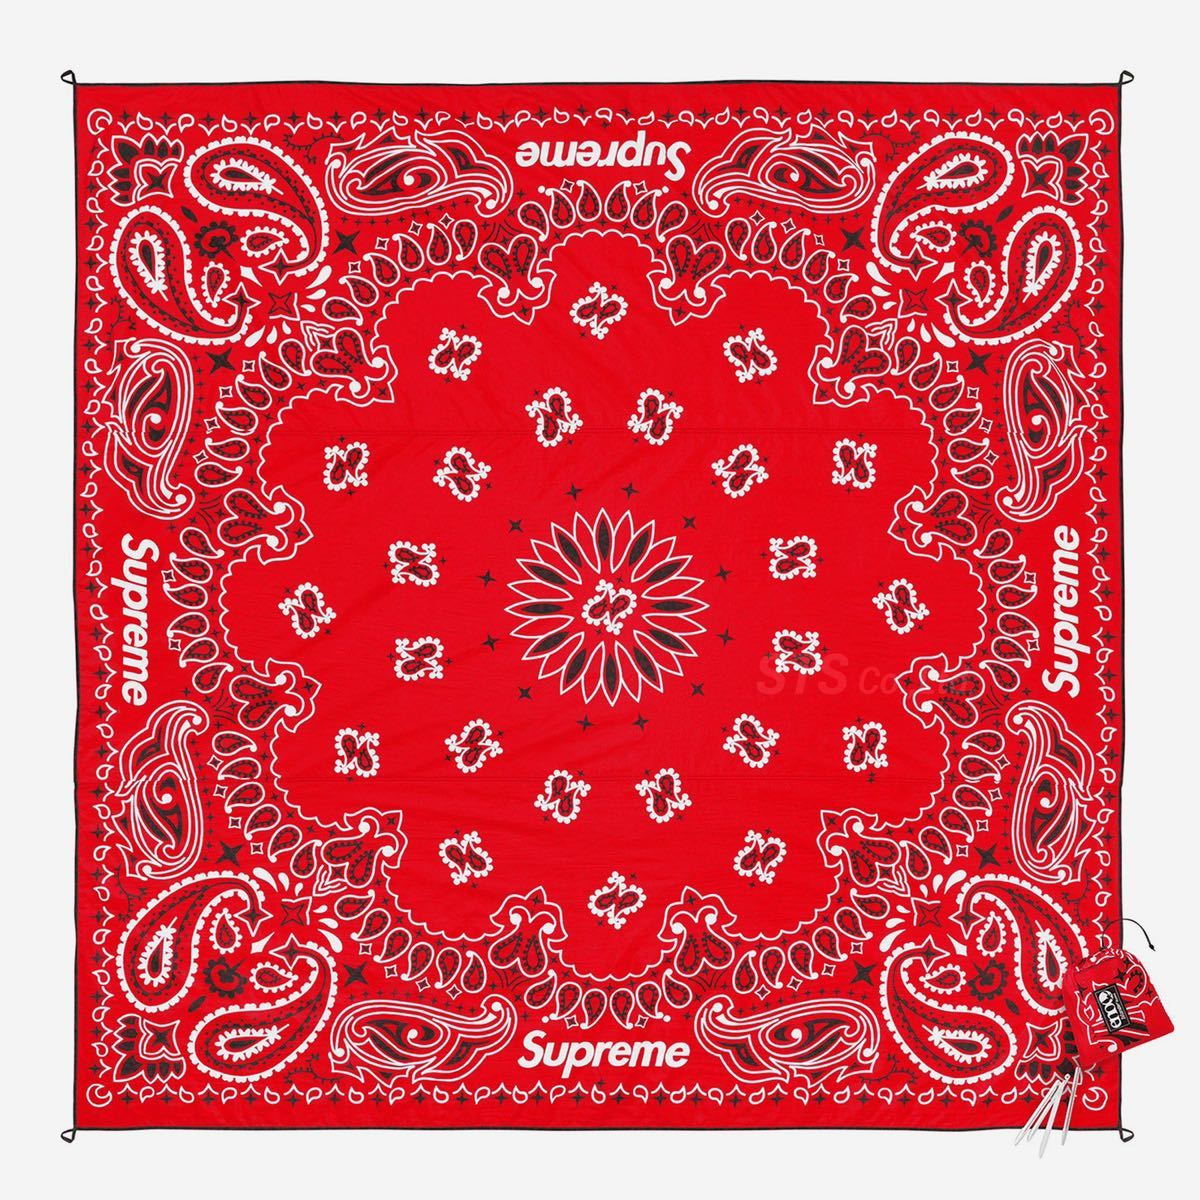 ヤフオク! -「supreme blanket」の落札相場・落札価格